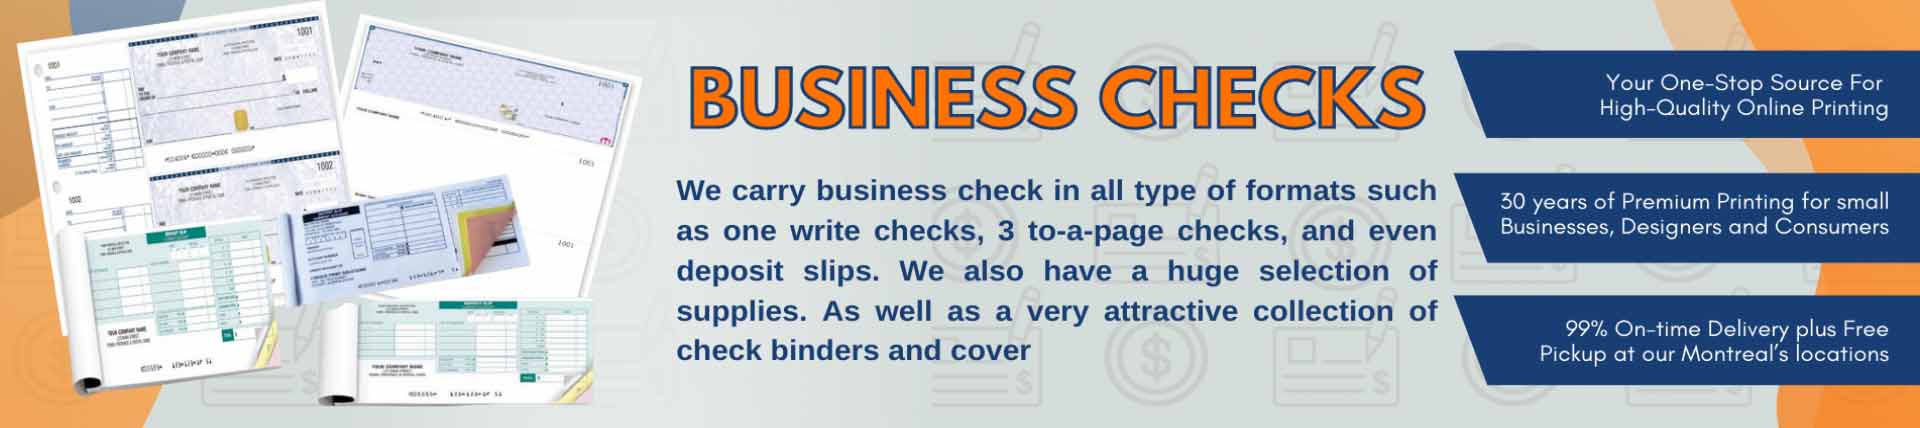 Business_Checks1